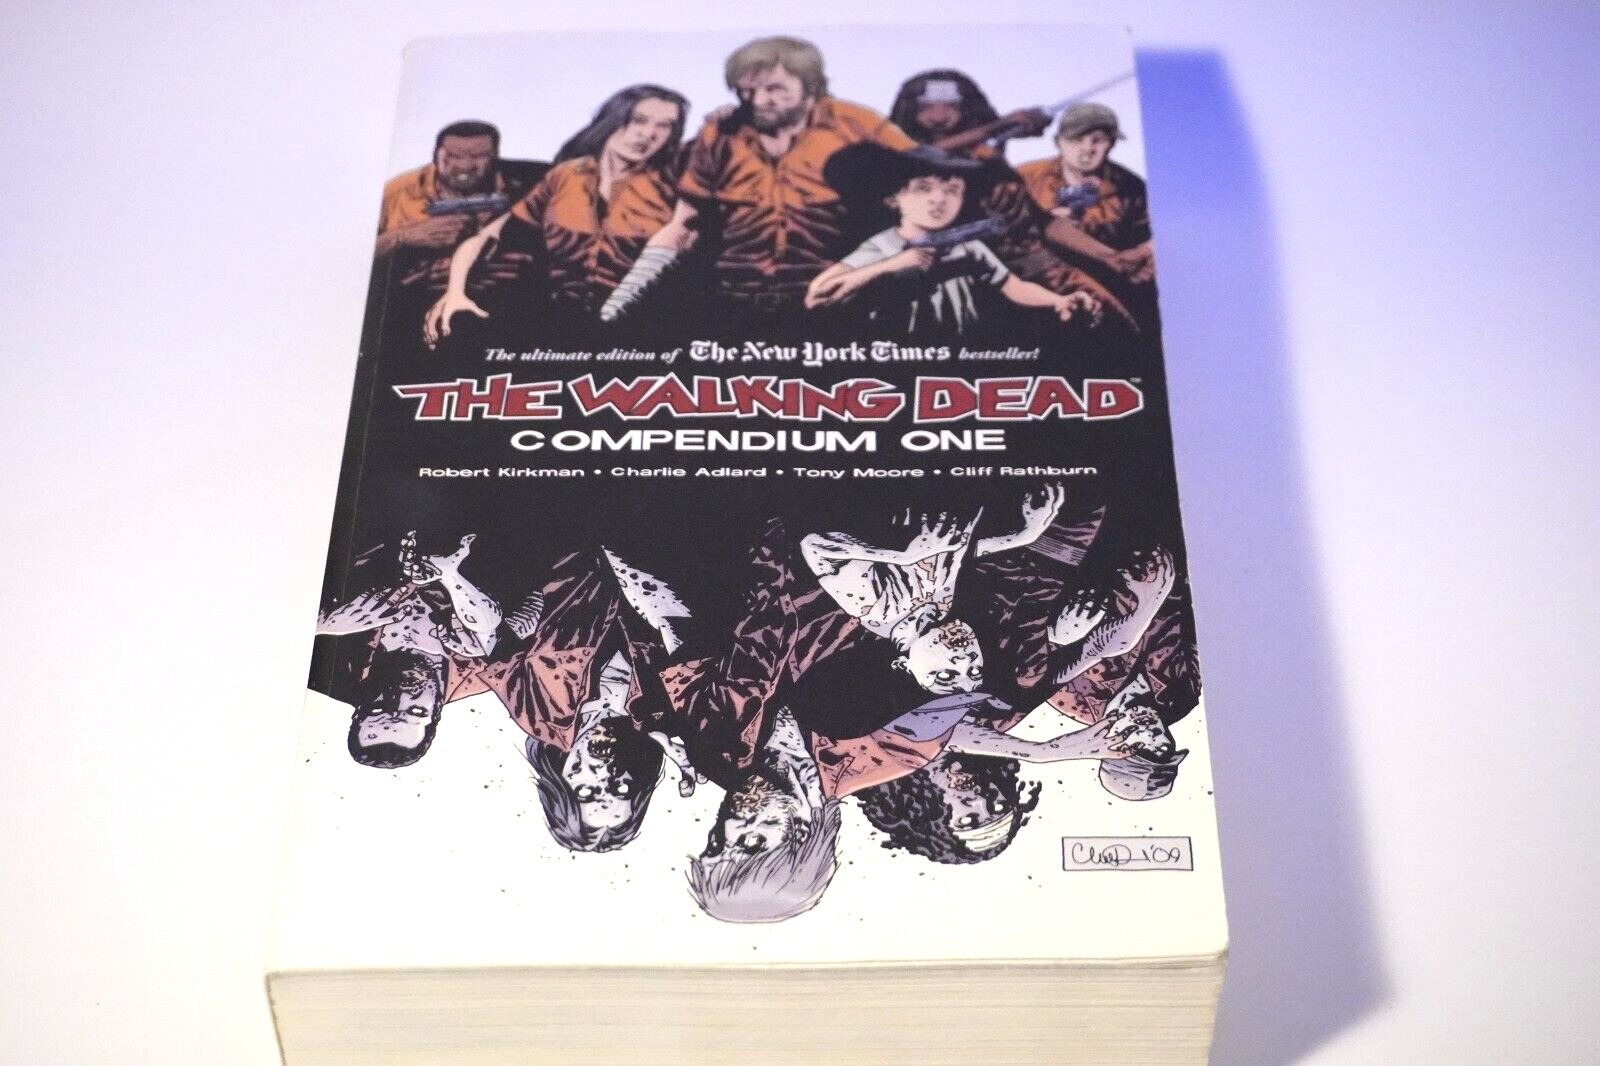 The Walking Dead Compendium #1 by Robert Kirkman (Image Comics)